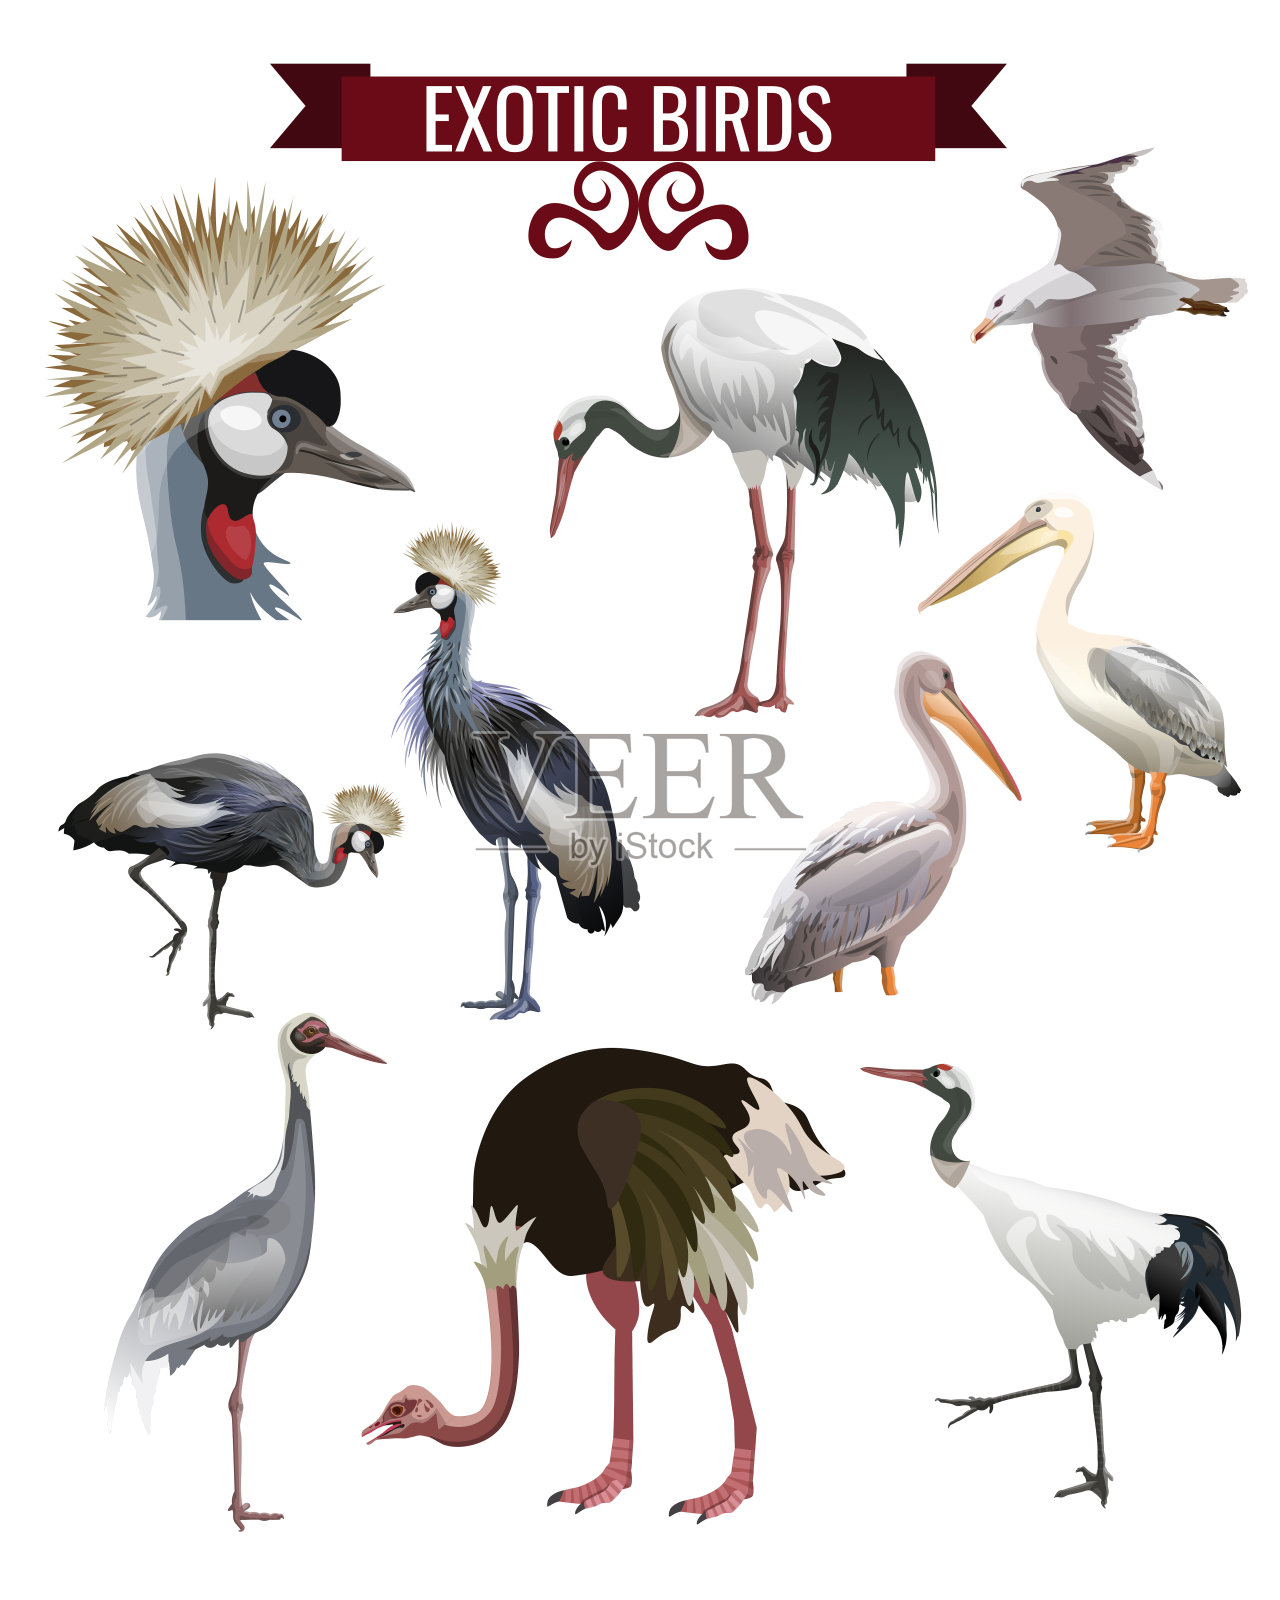 奇异的鸟类设置在现实主义风格设计设计元素图片